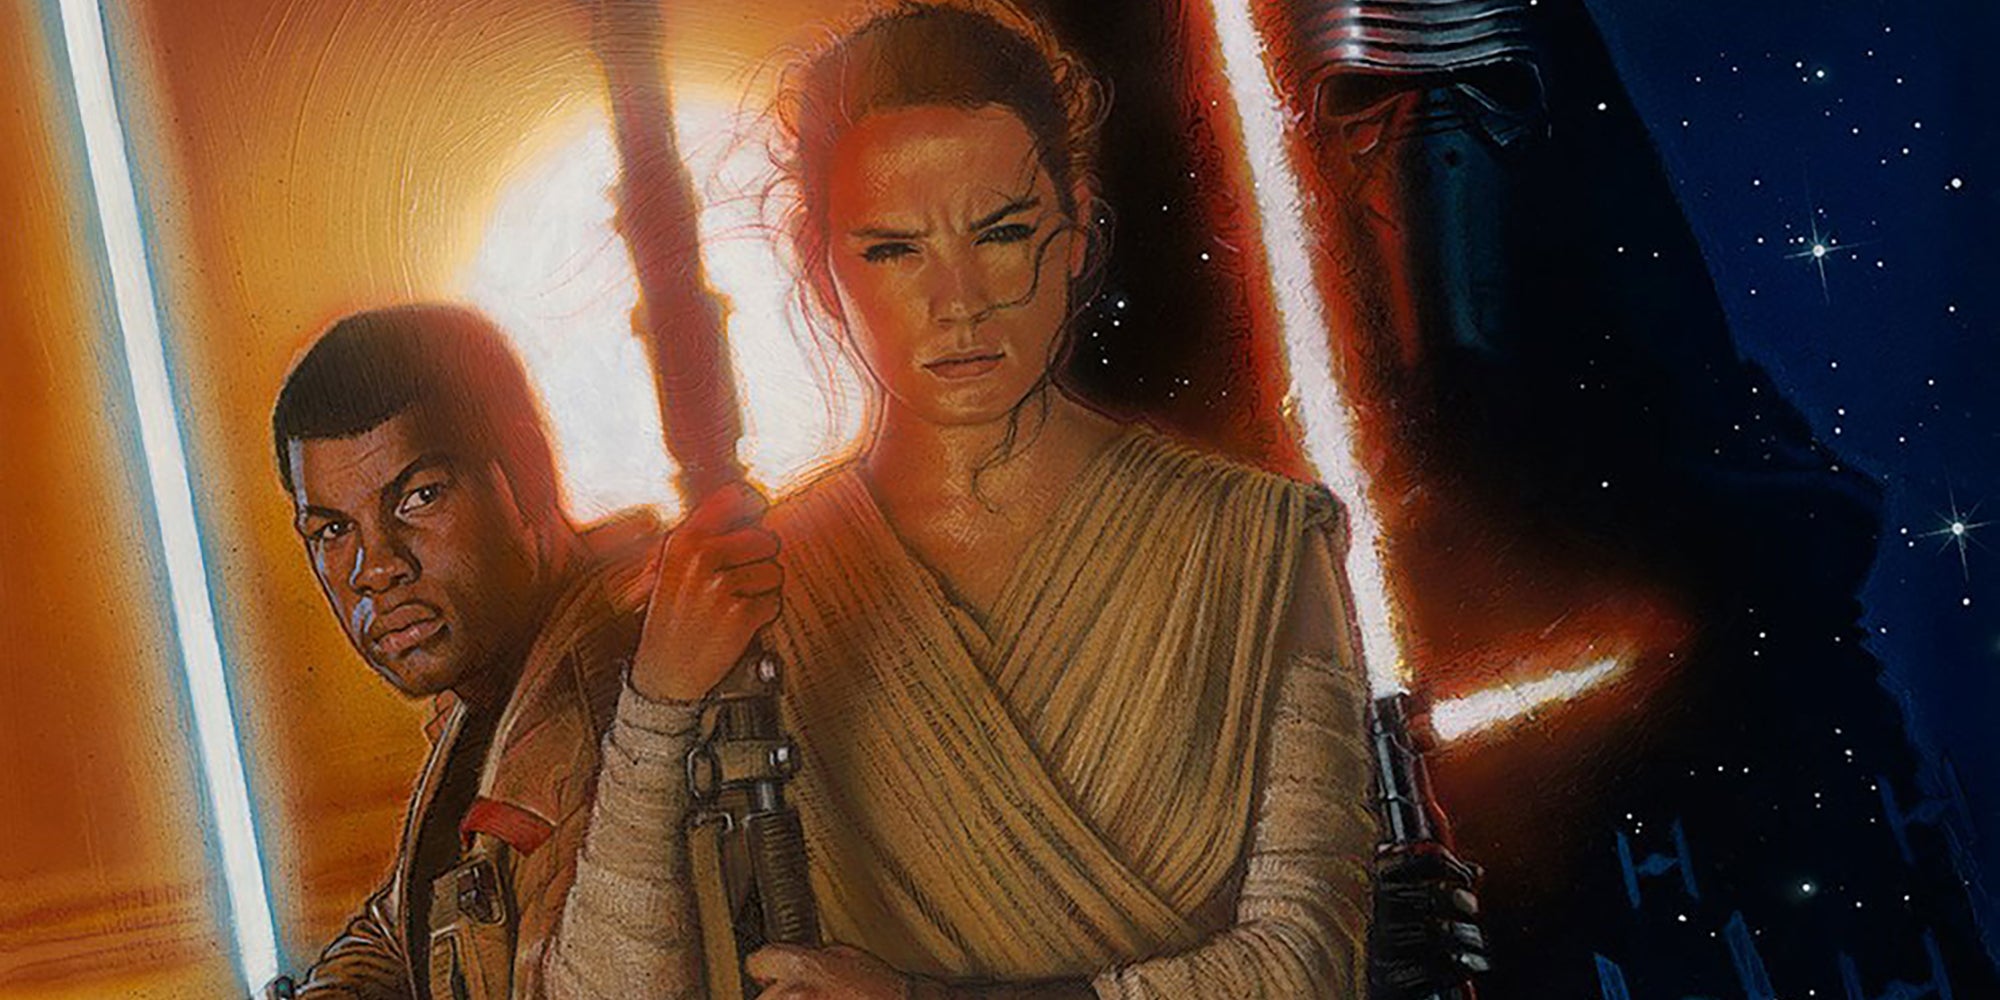 Star Wars painting by Drew Struzan